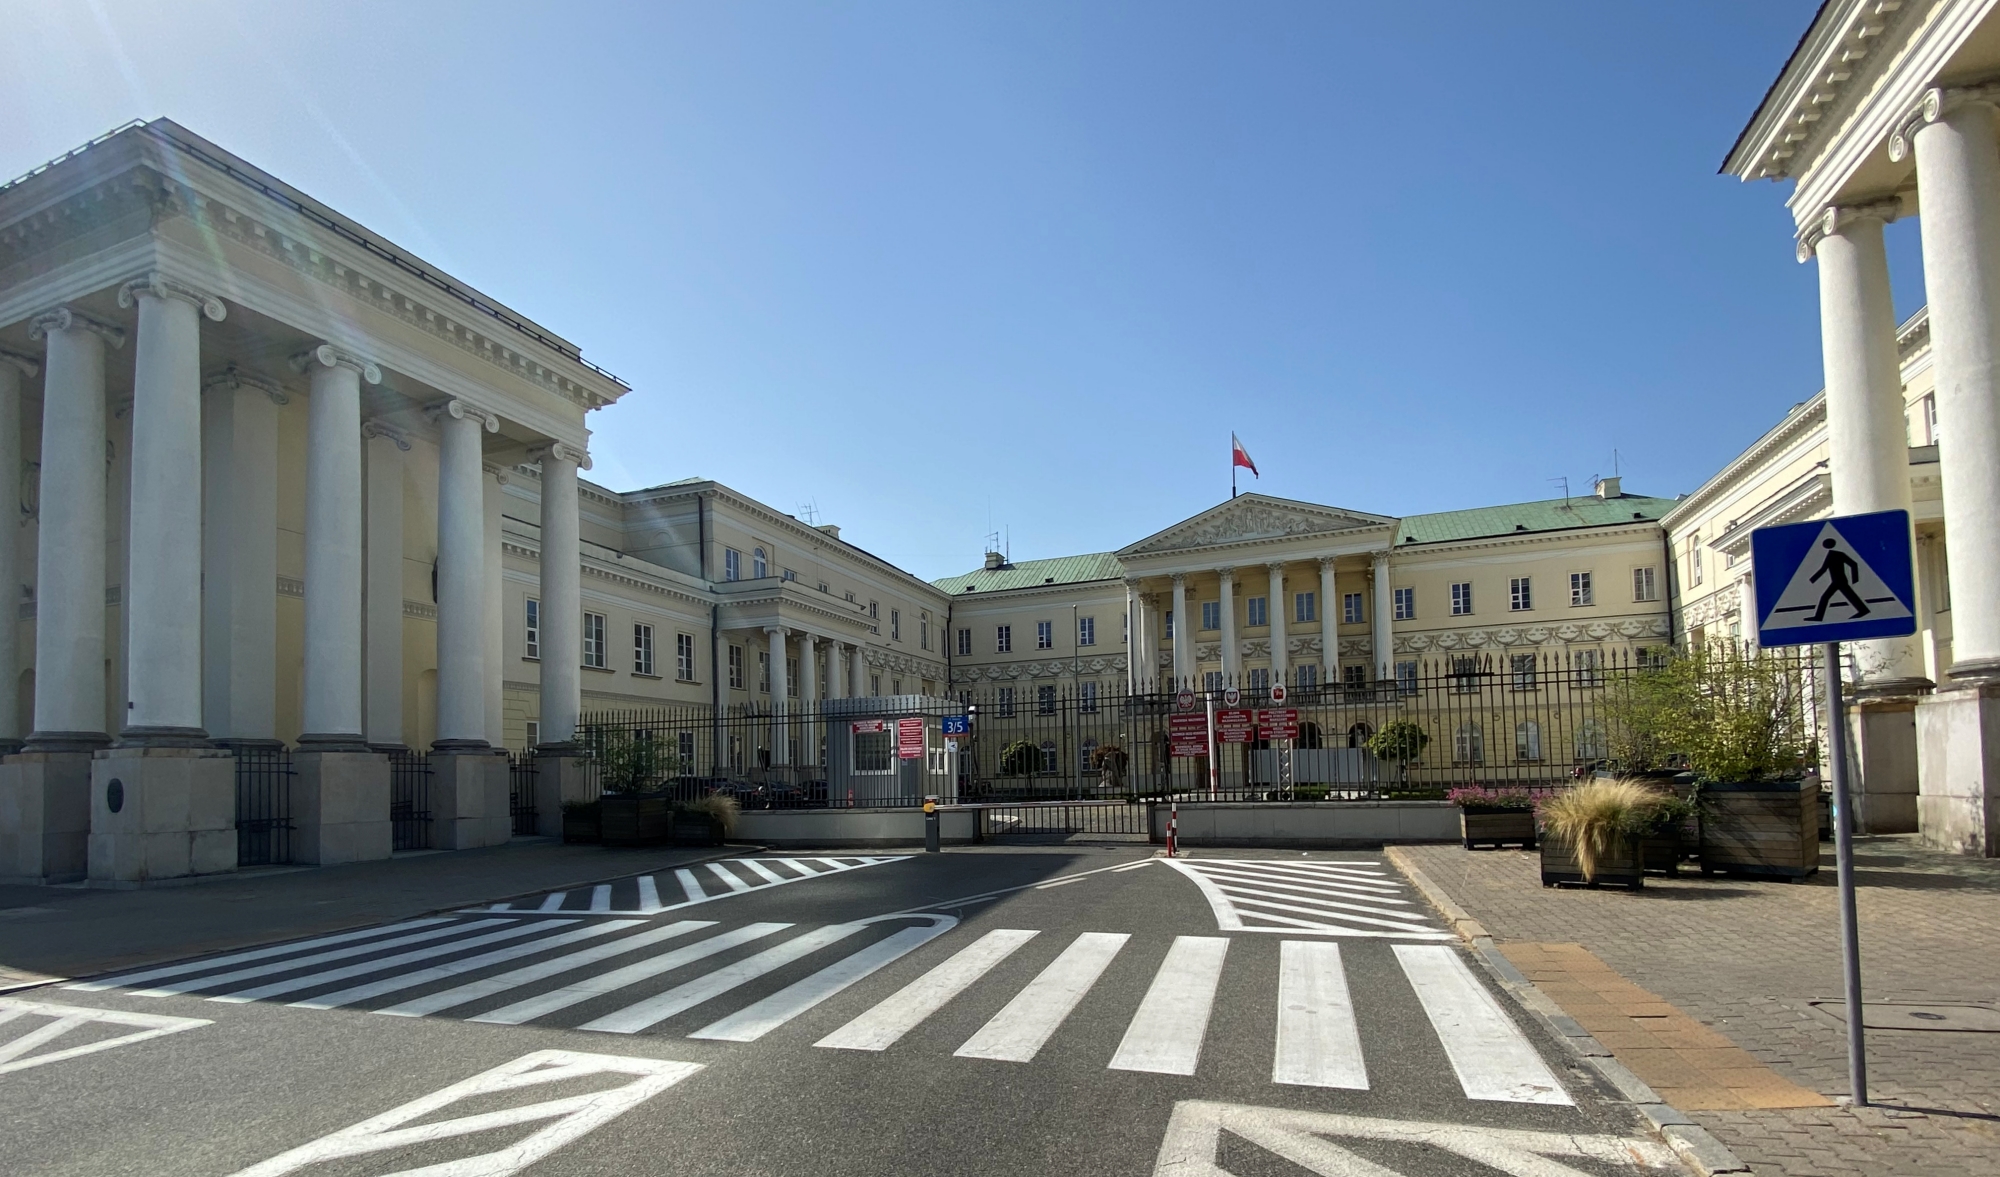 Urząd Miasta Stołecznego Warszawy - monumentalny pałac z placu Bankowego